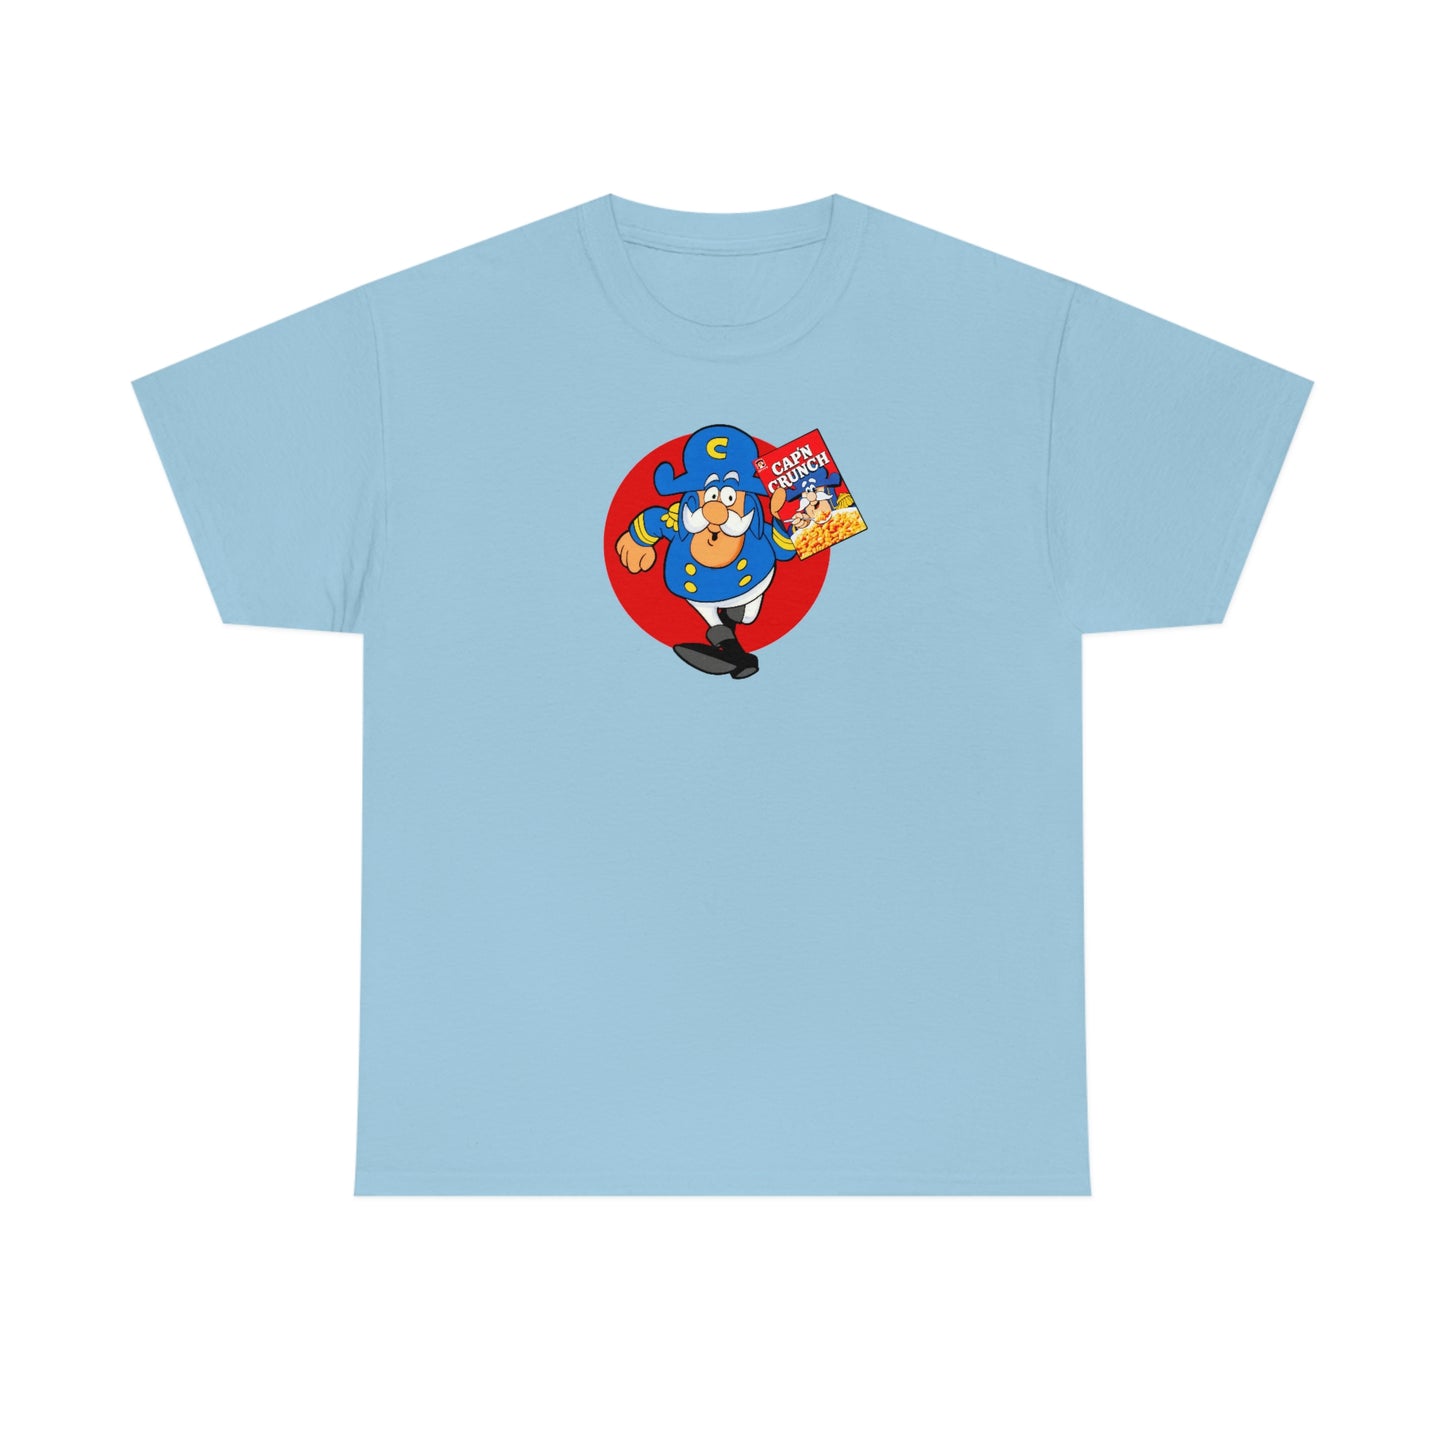 Cap'n Crunch T-Shirt